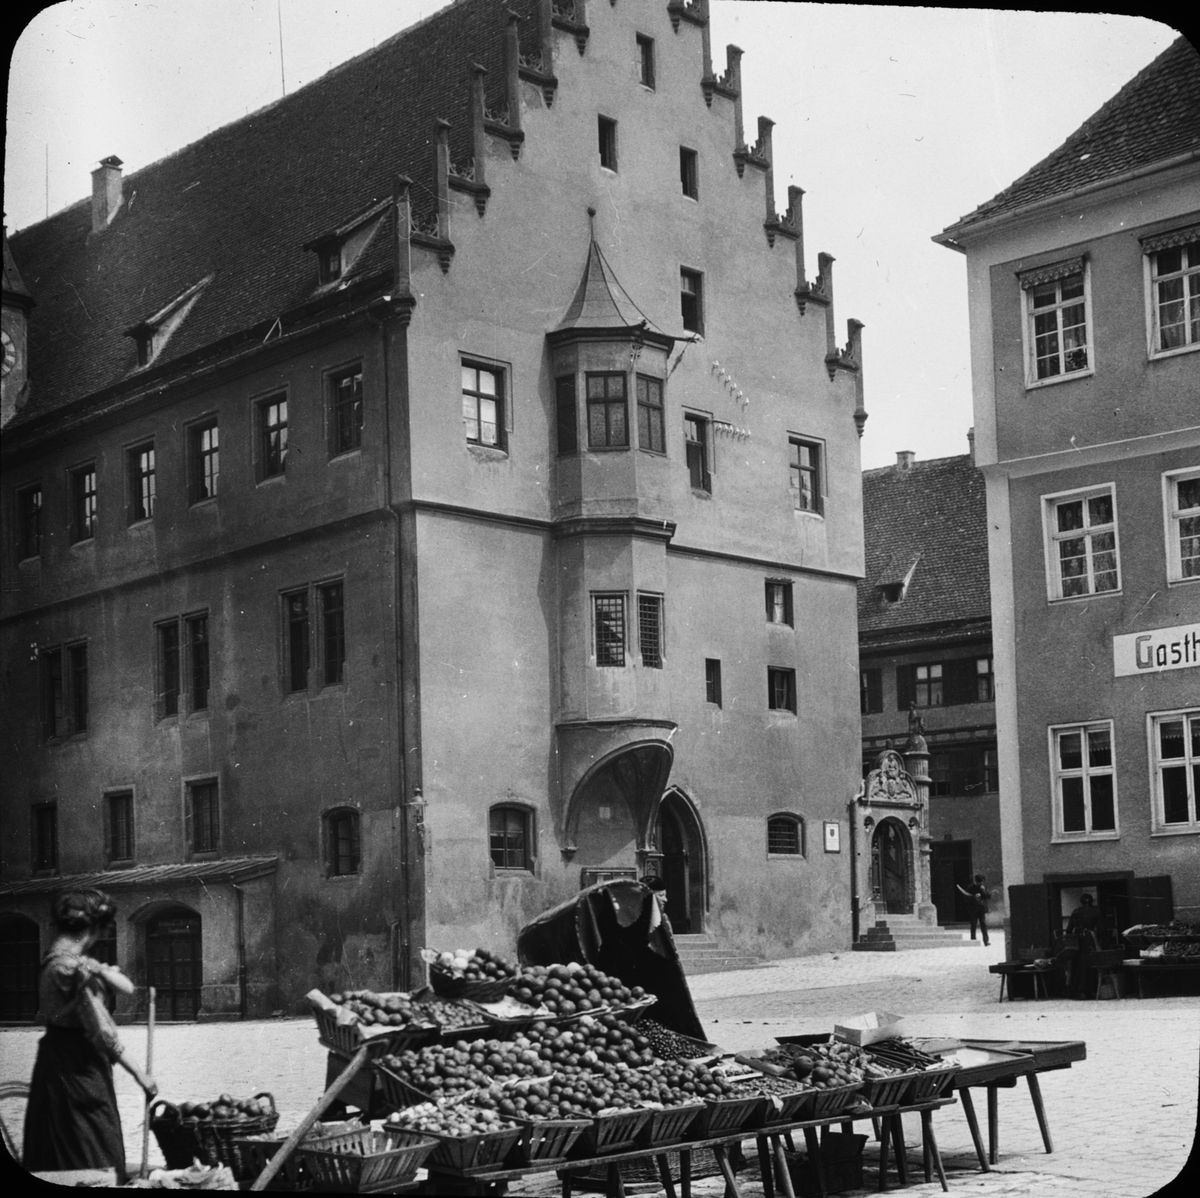 Skioptikonbild med motiv av frukstånd på Marktplatz i Nörlingen.
Bilden har förvarats i kartong märkt: Vårresan 1911. Nördlingen IX.